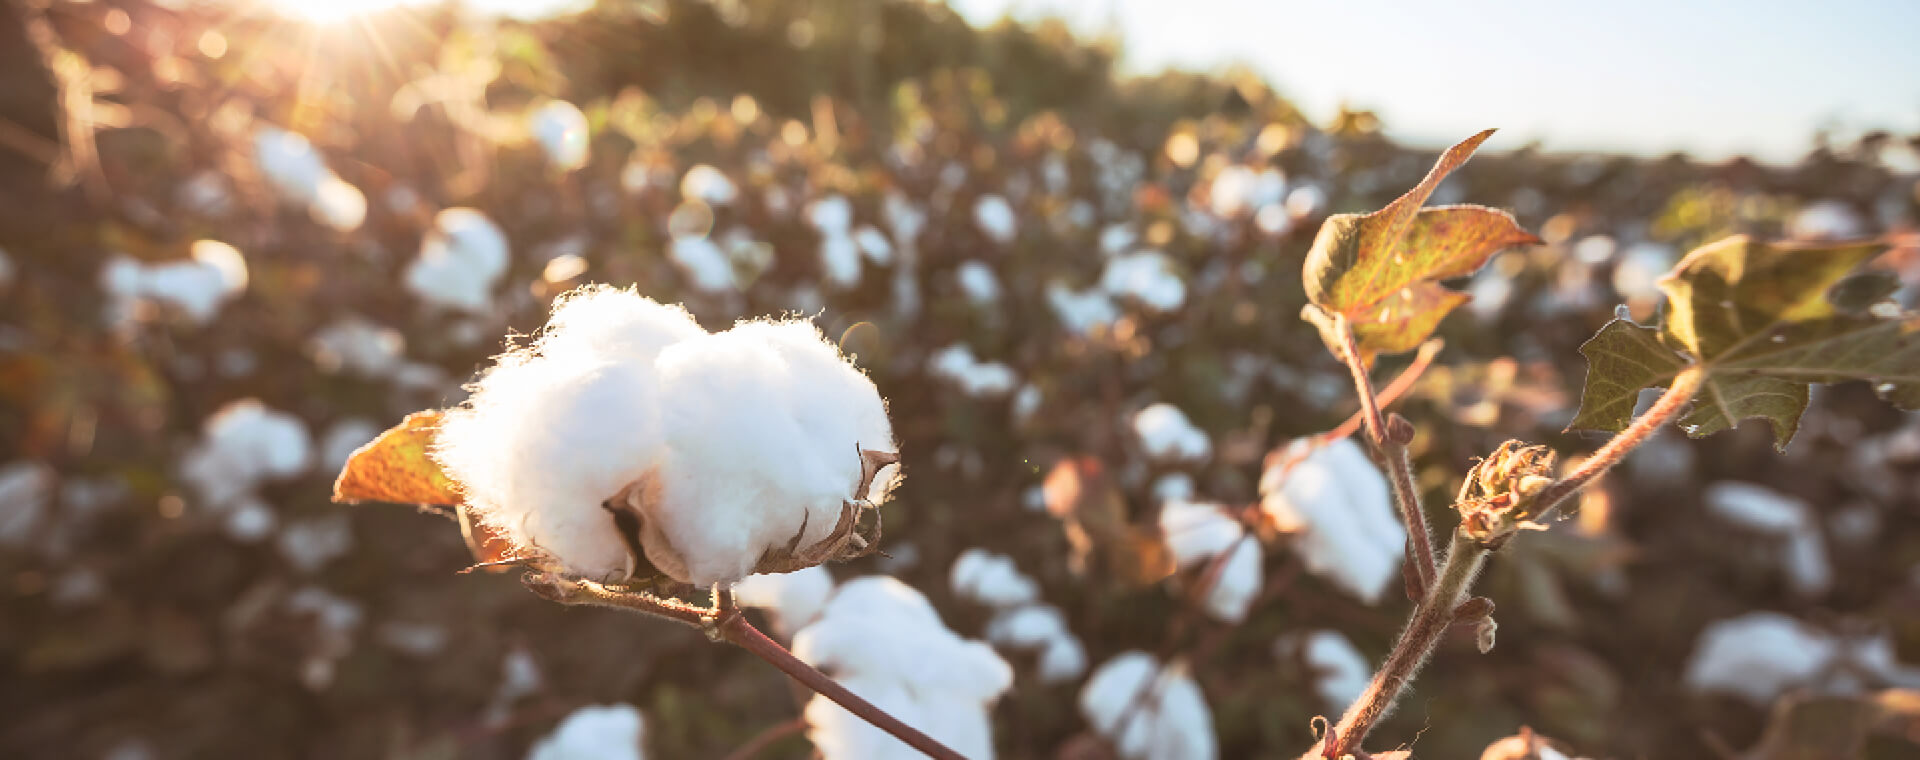 Le coton biologique a besoin d'un coup de pouce - Organic in